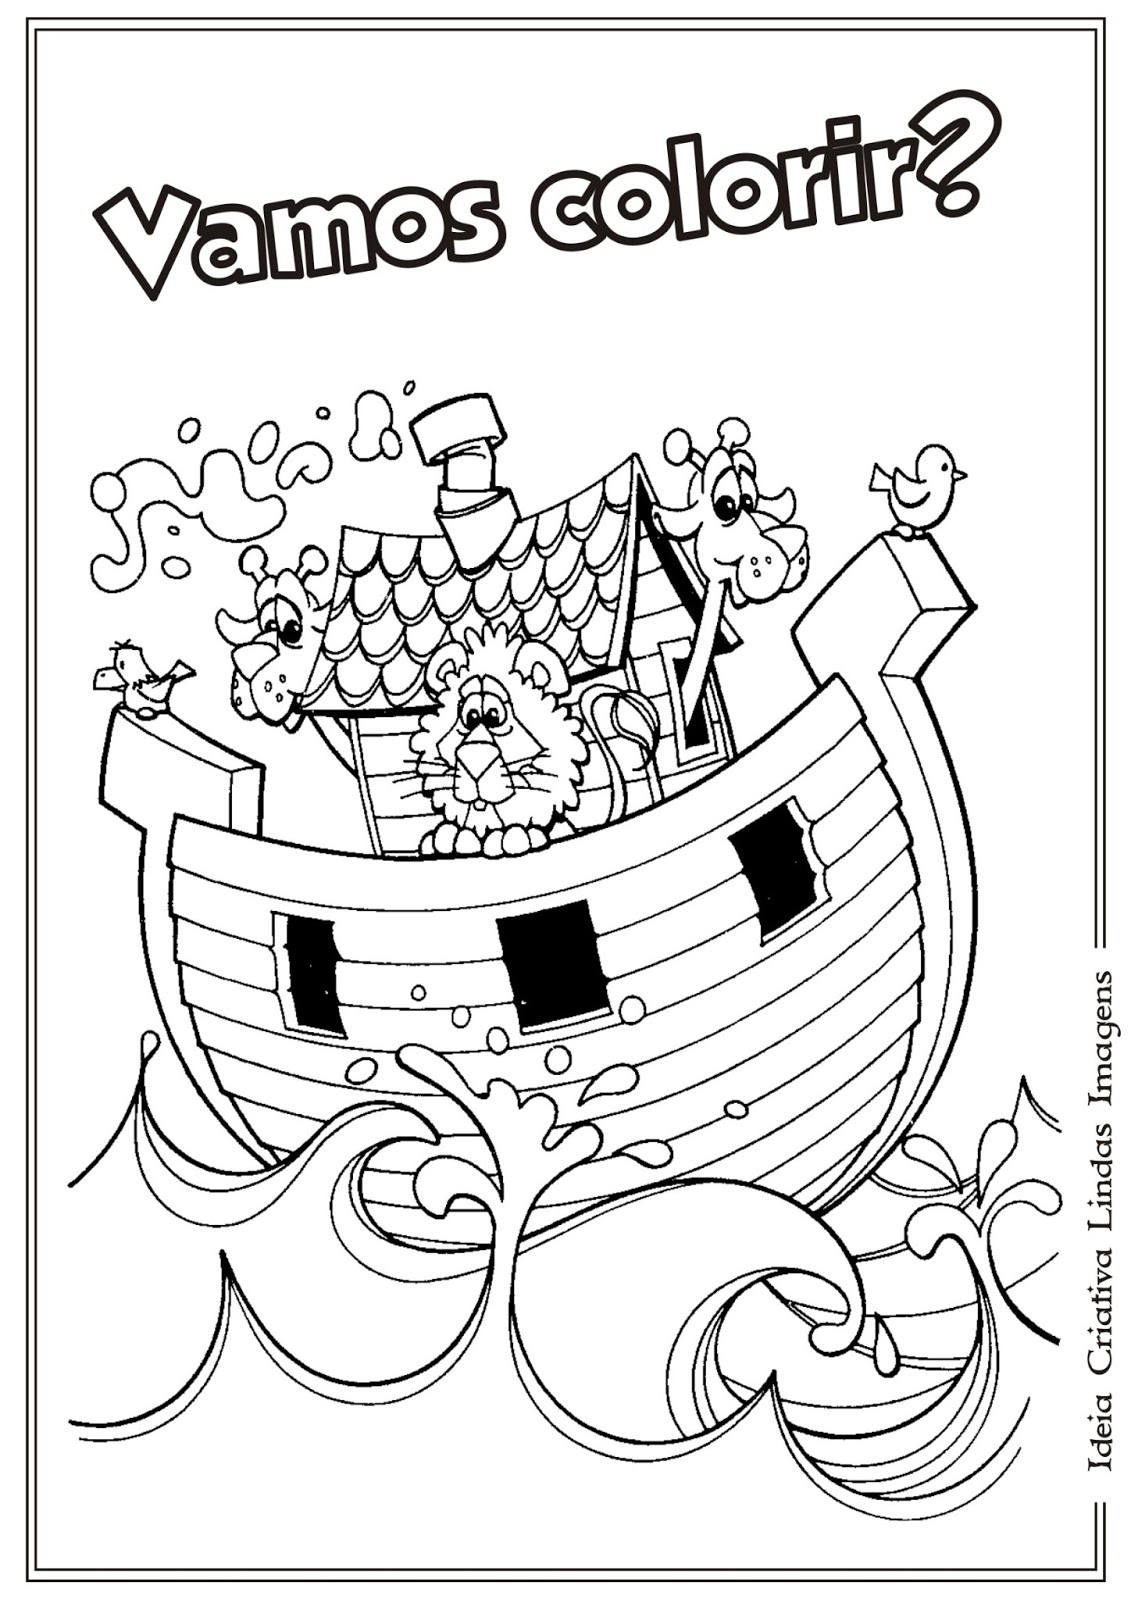 Desenho bíblico para colorir A arca de Nóe Riscos para colorir gratis